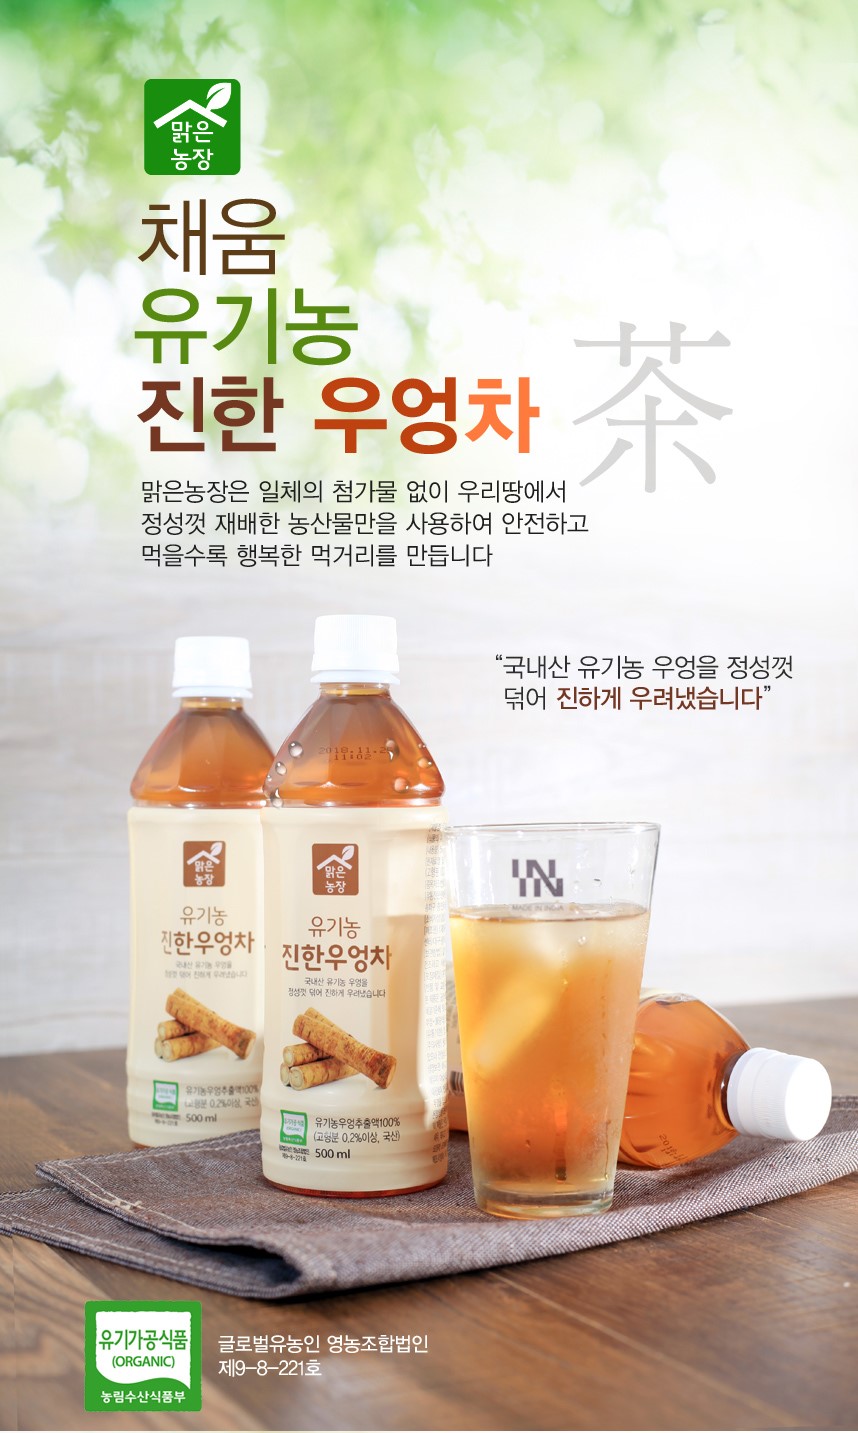 韓國食品-[채움 맑은농장] 유기농 진한 우엉차 500ml